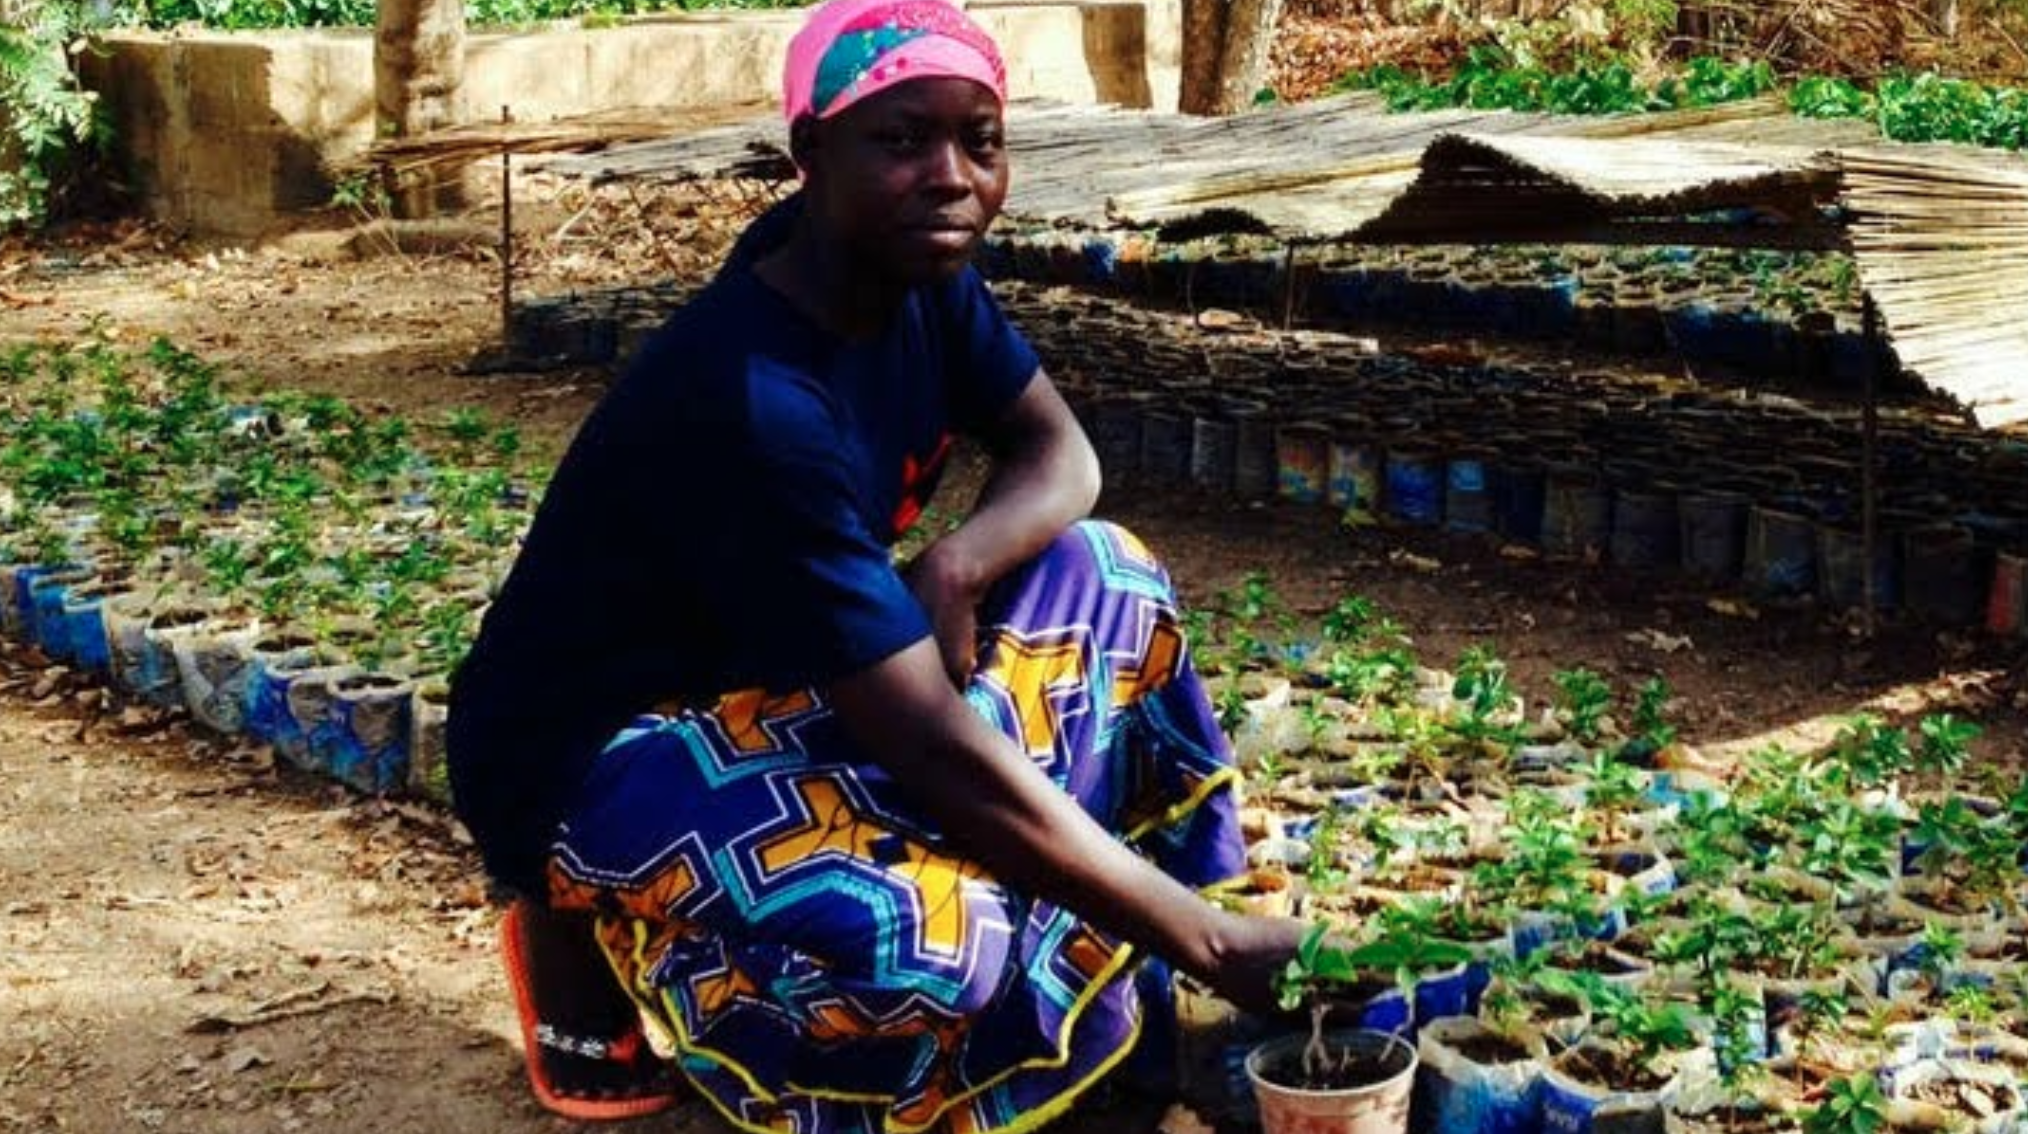 COP15 désertification: au Burkina Faso, la ferme de Guié restaure les sols dégradés – un reportage avec Ibrahim Thiaw et Rémi Hemerick de SOS SAHEL International France